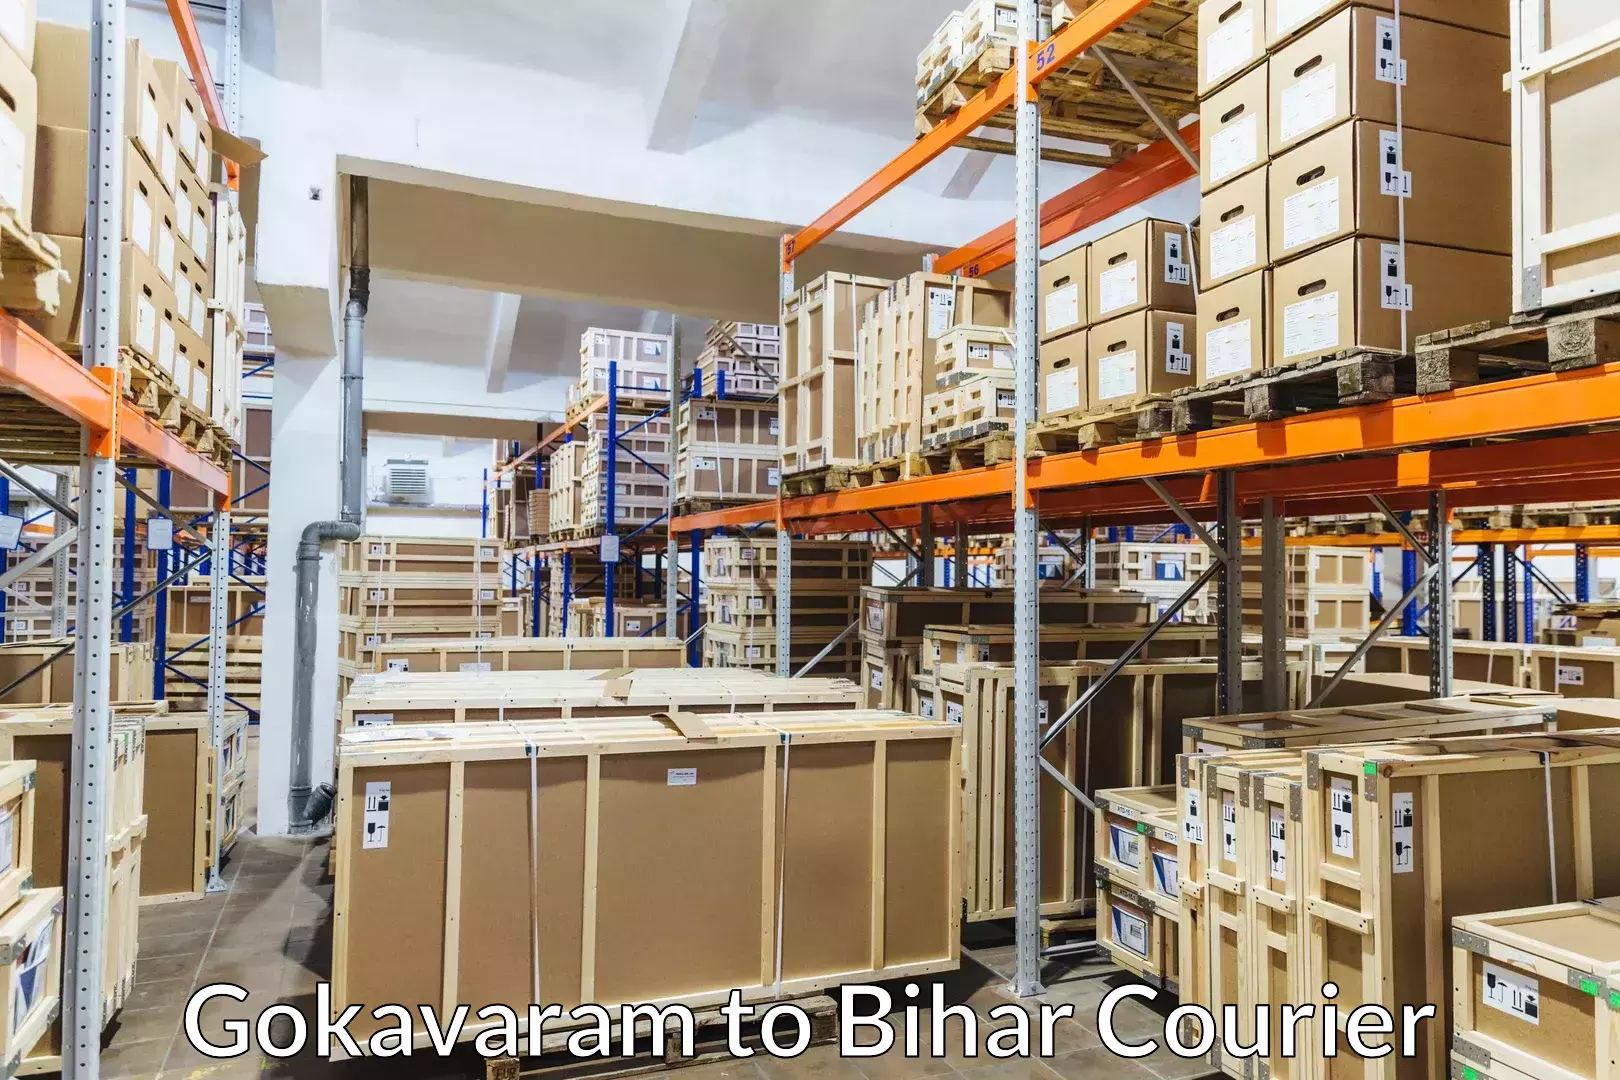 Moving and packing experts Gokavaram to Nalanda